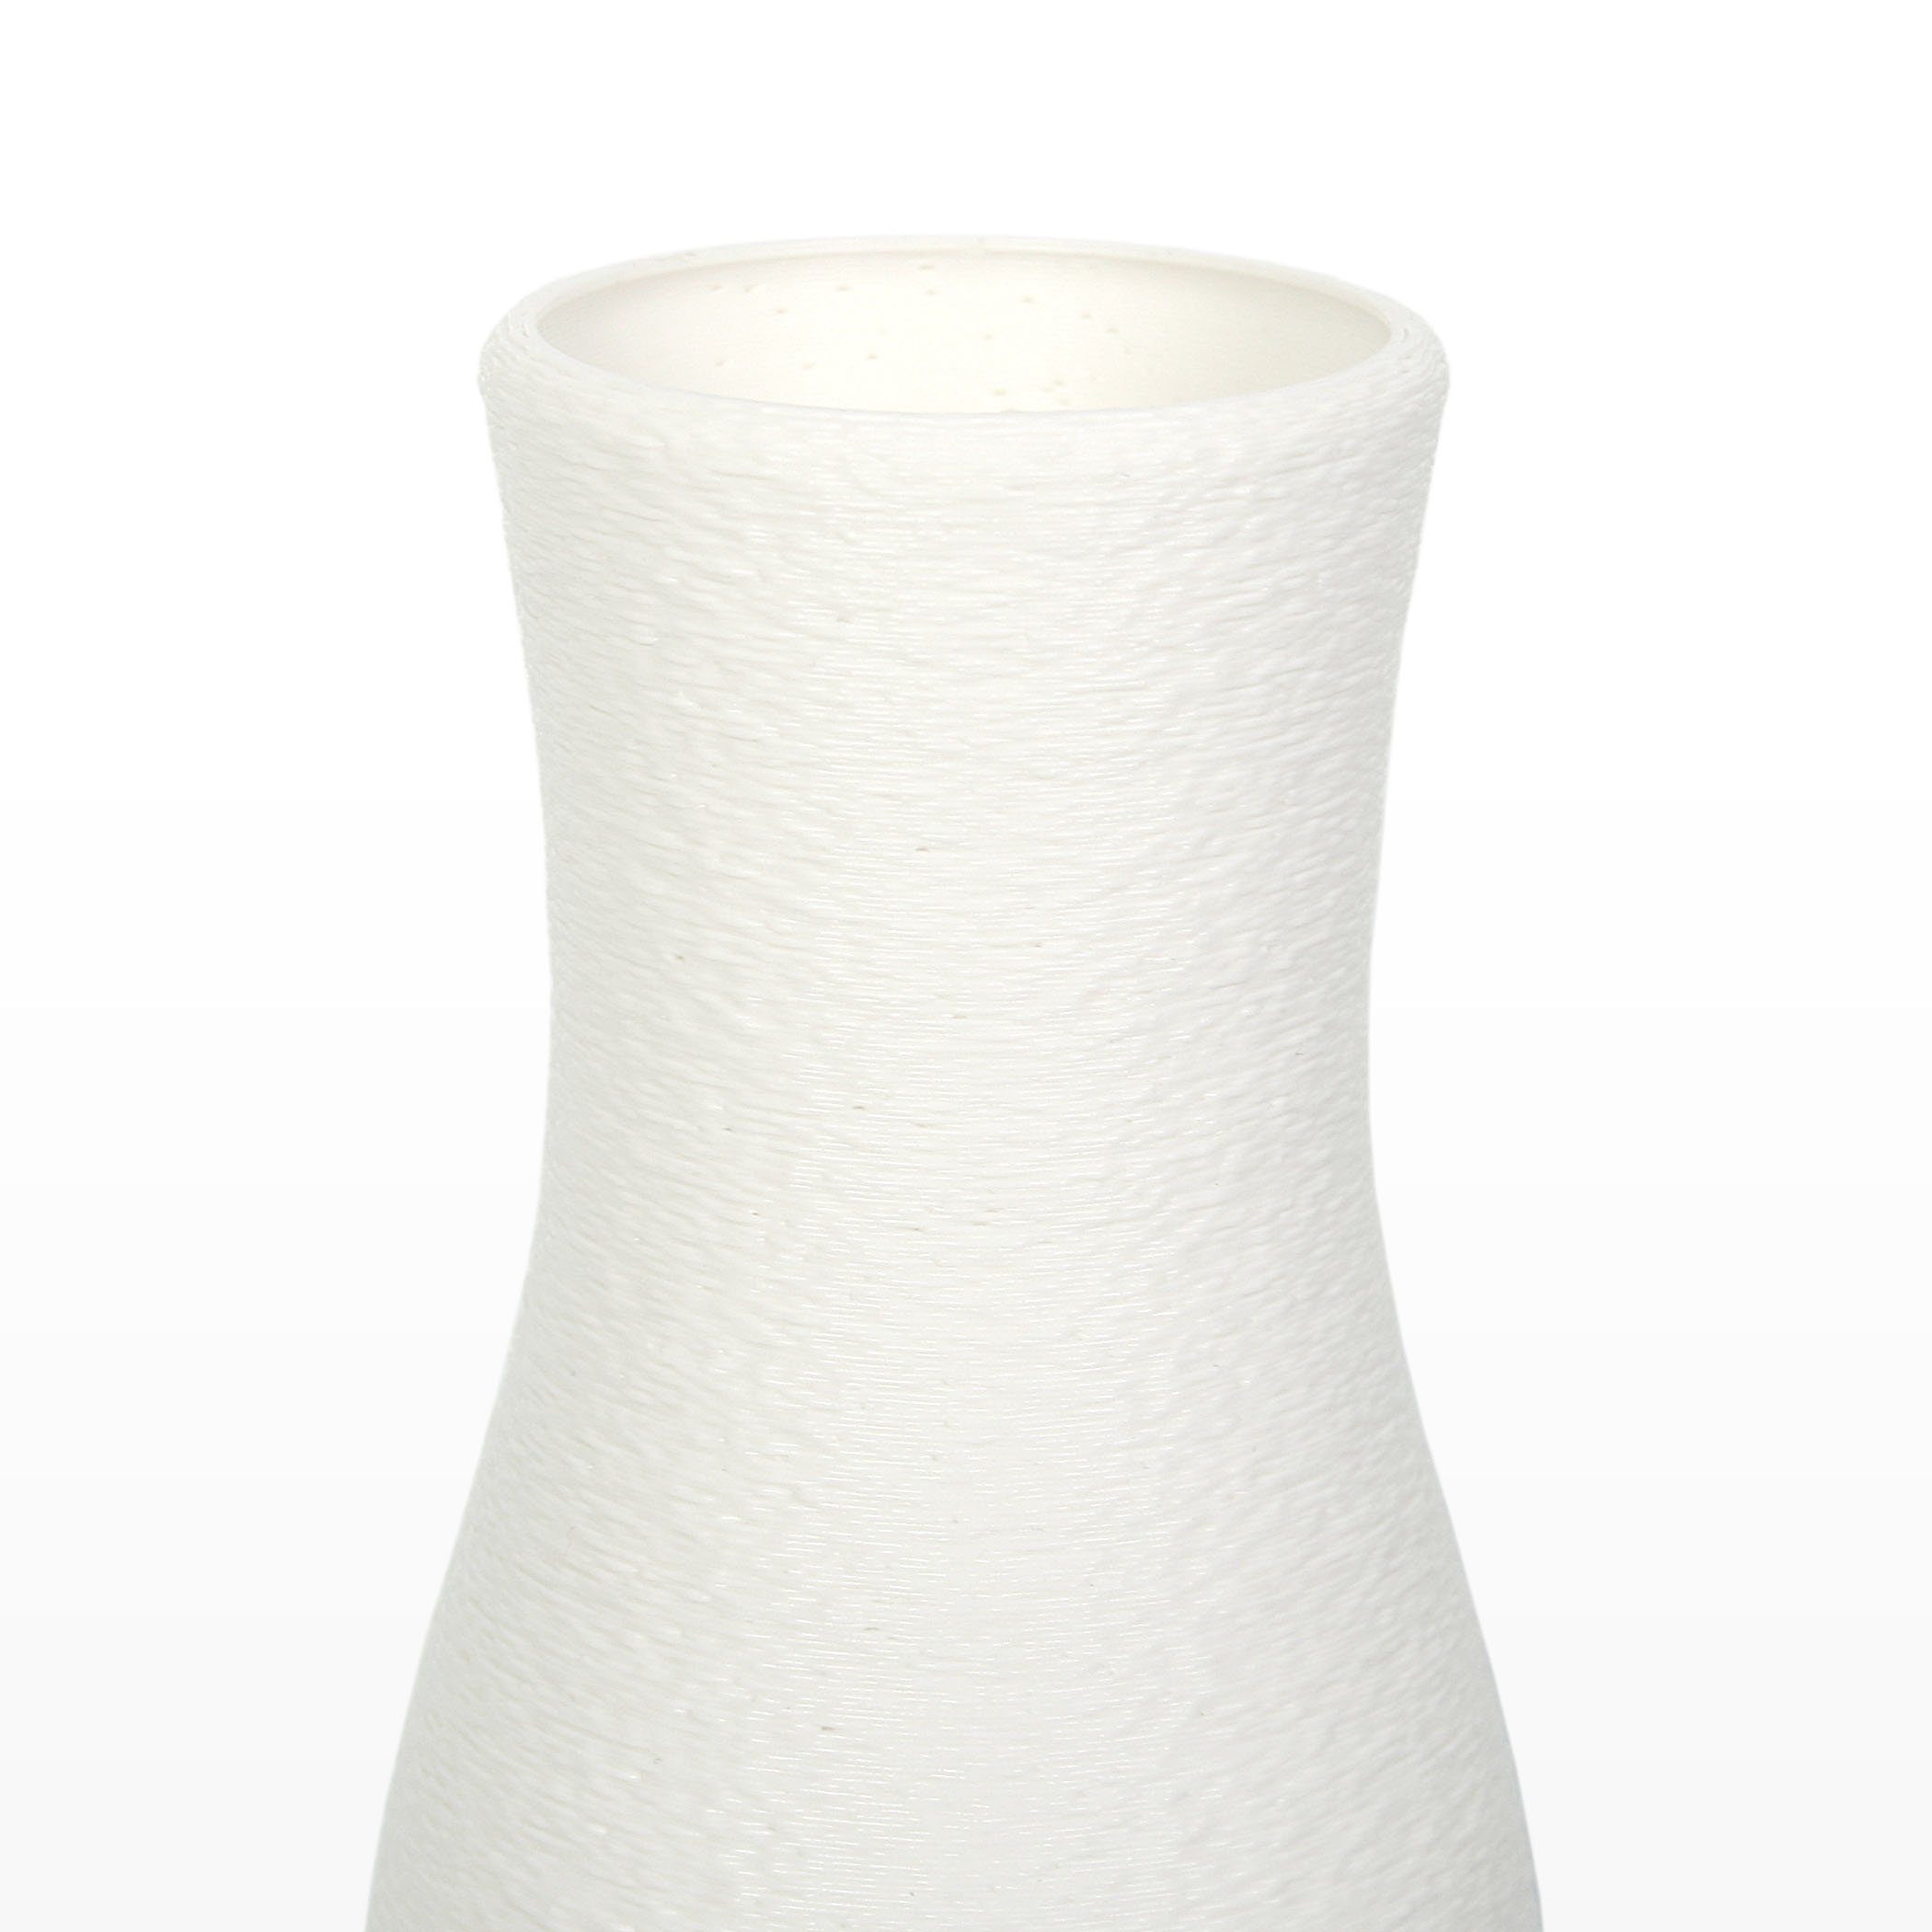 Kreative Feder Blumenvase White aus Vase Designer & – aus Dekovase bruchsicher Dekorative Rohstoffen; wasserdicht nachwachsenden Bio-Kunststoff